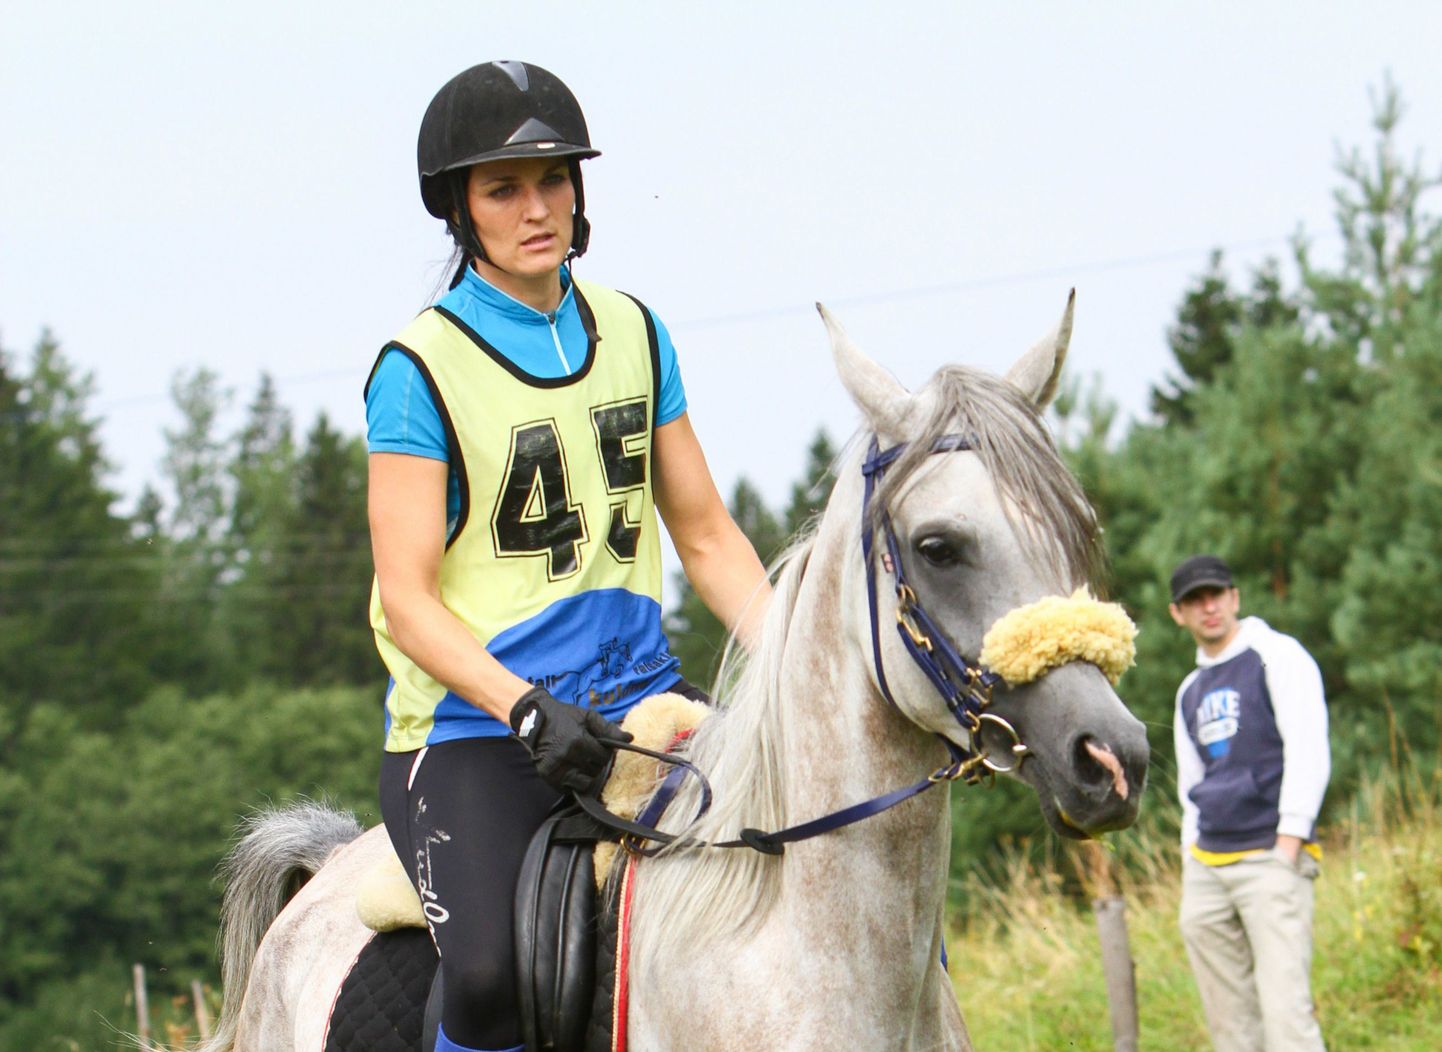 Soome meistrivõistlustel kestvusratsutamises läbis Eestist pärit sportlane Ines Beilmann-Lehtonen hobusel Vandah El Aryes raja kõige kiiremini